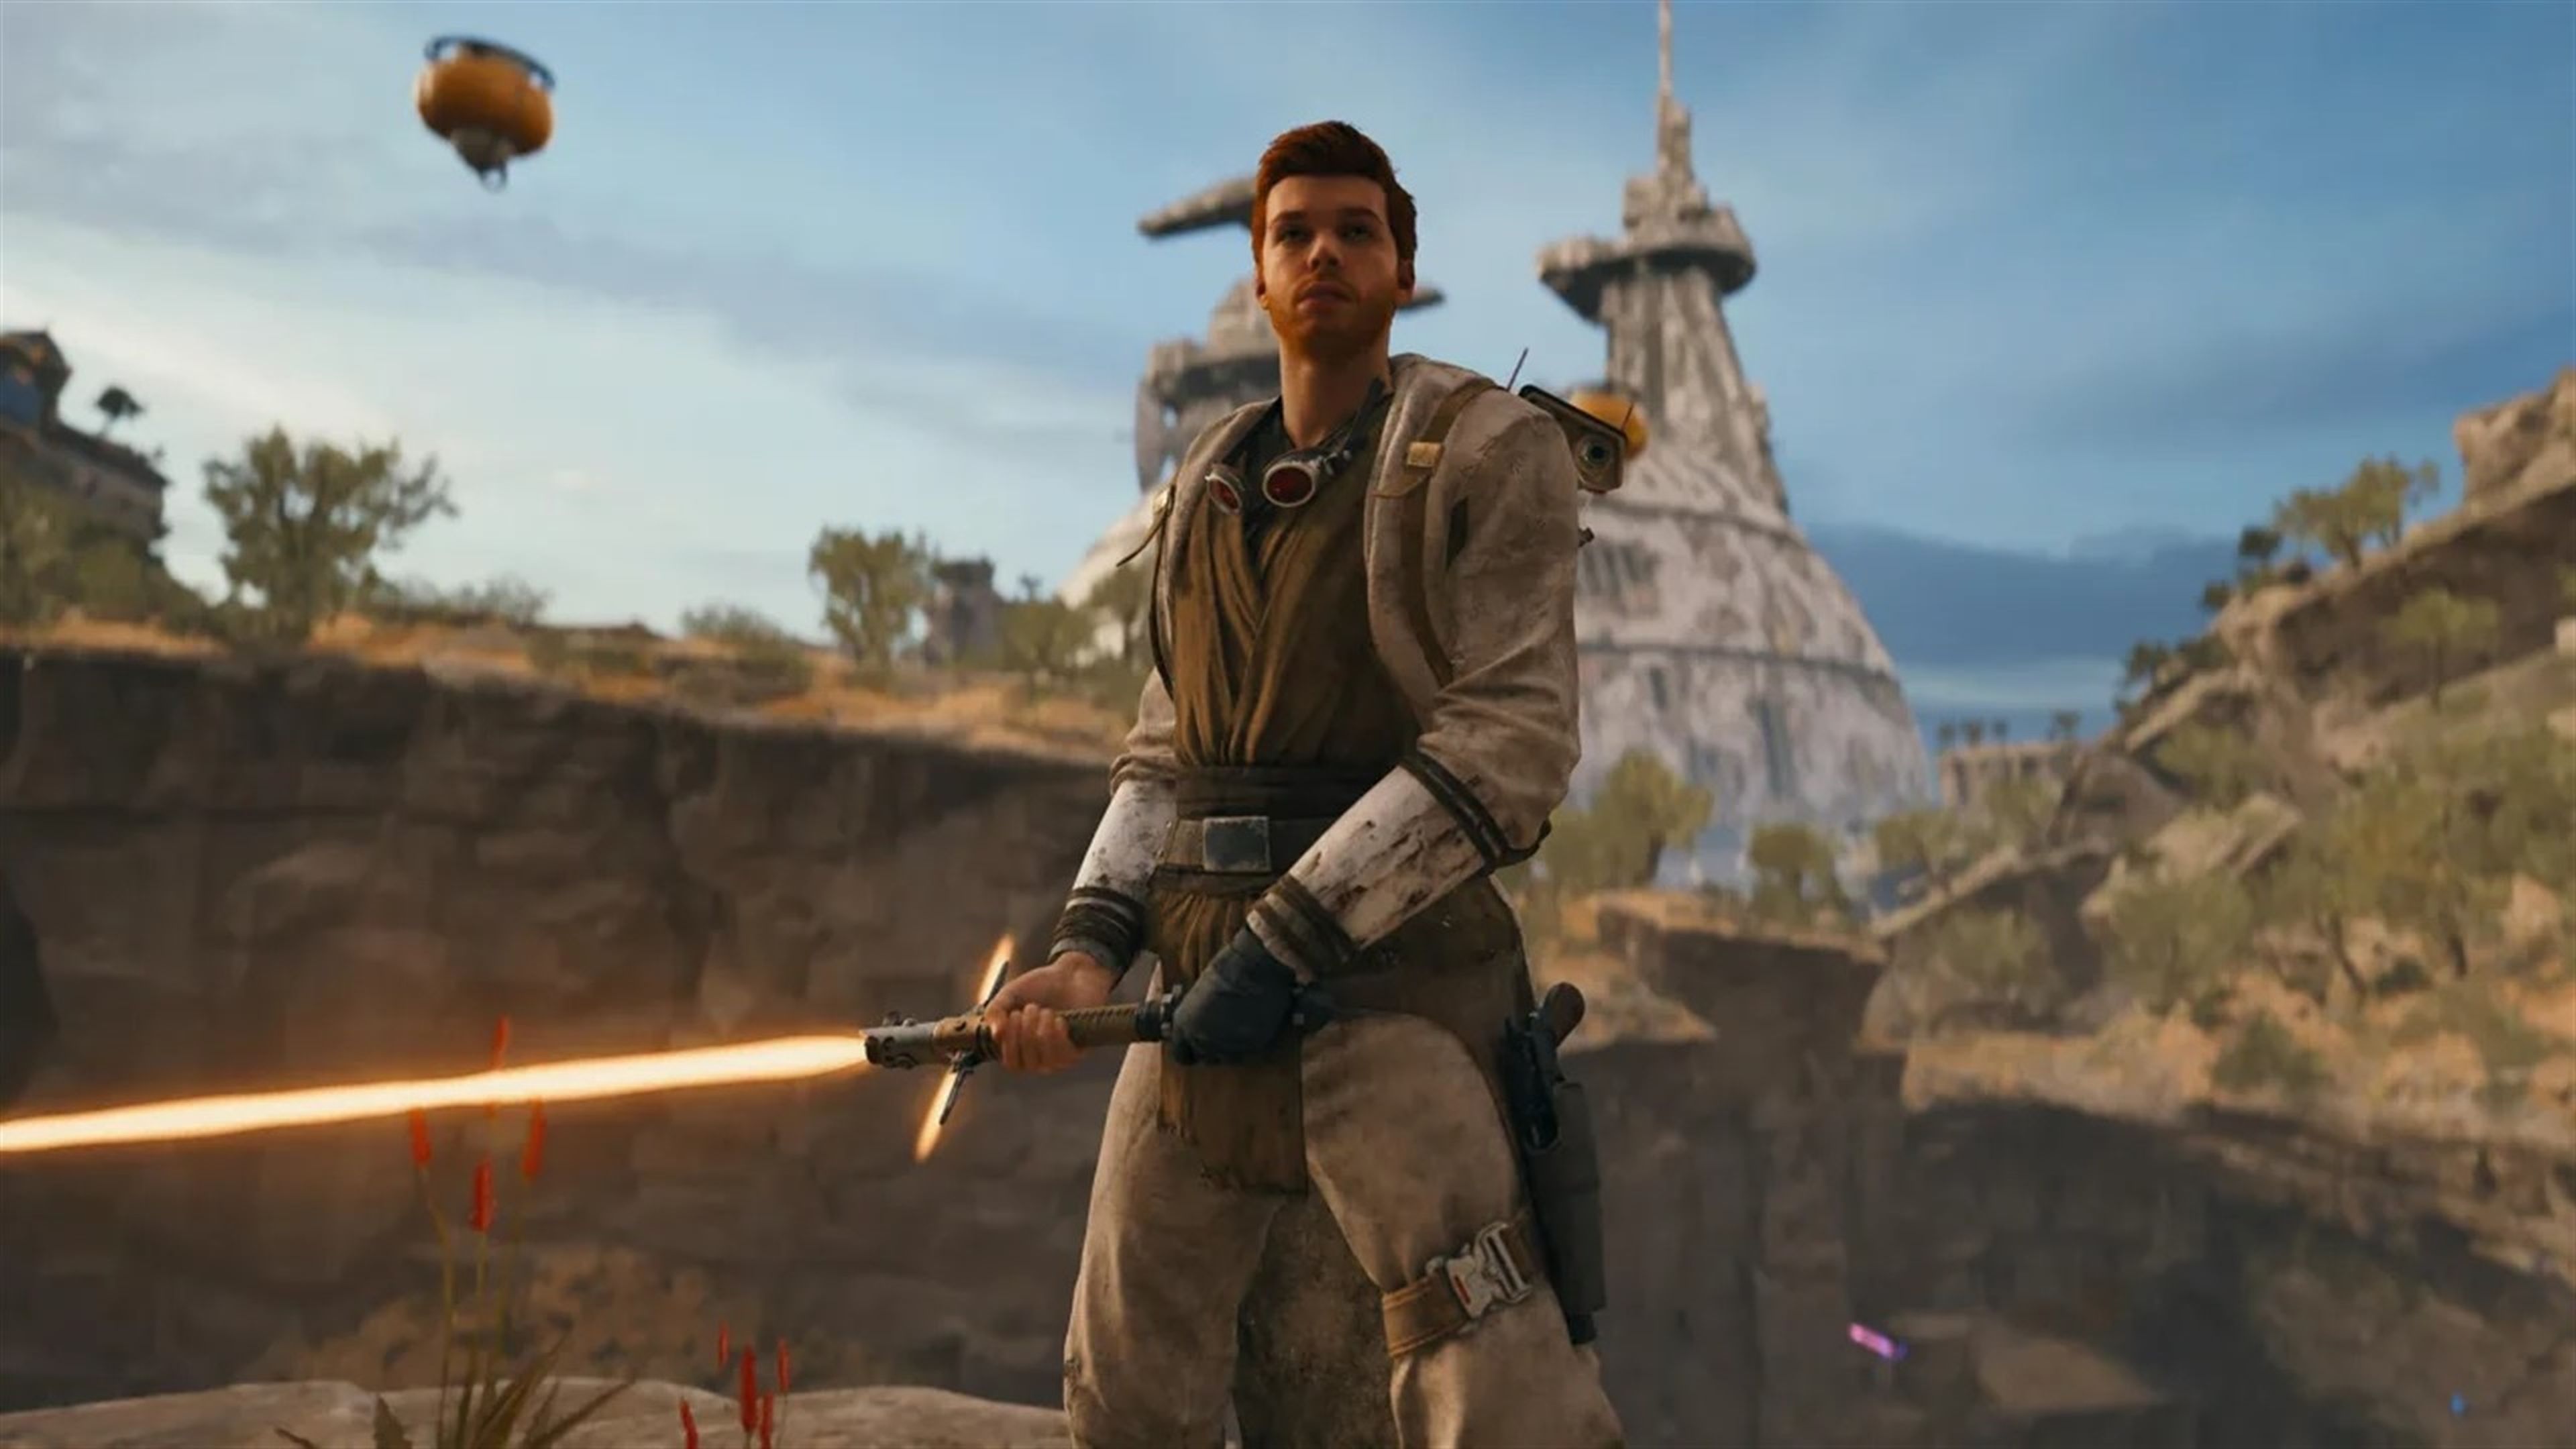 Nuevo parche de Star Wars Jedi: Survivor en PS5 y Xbox Series X